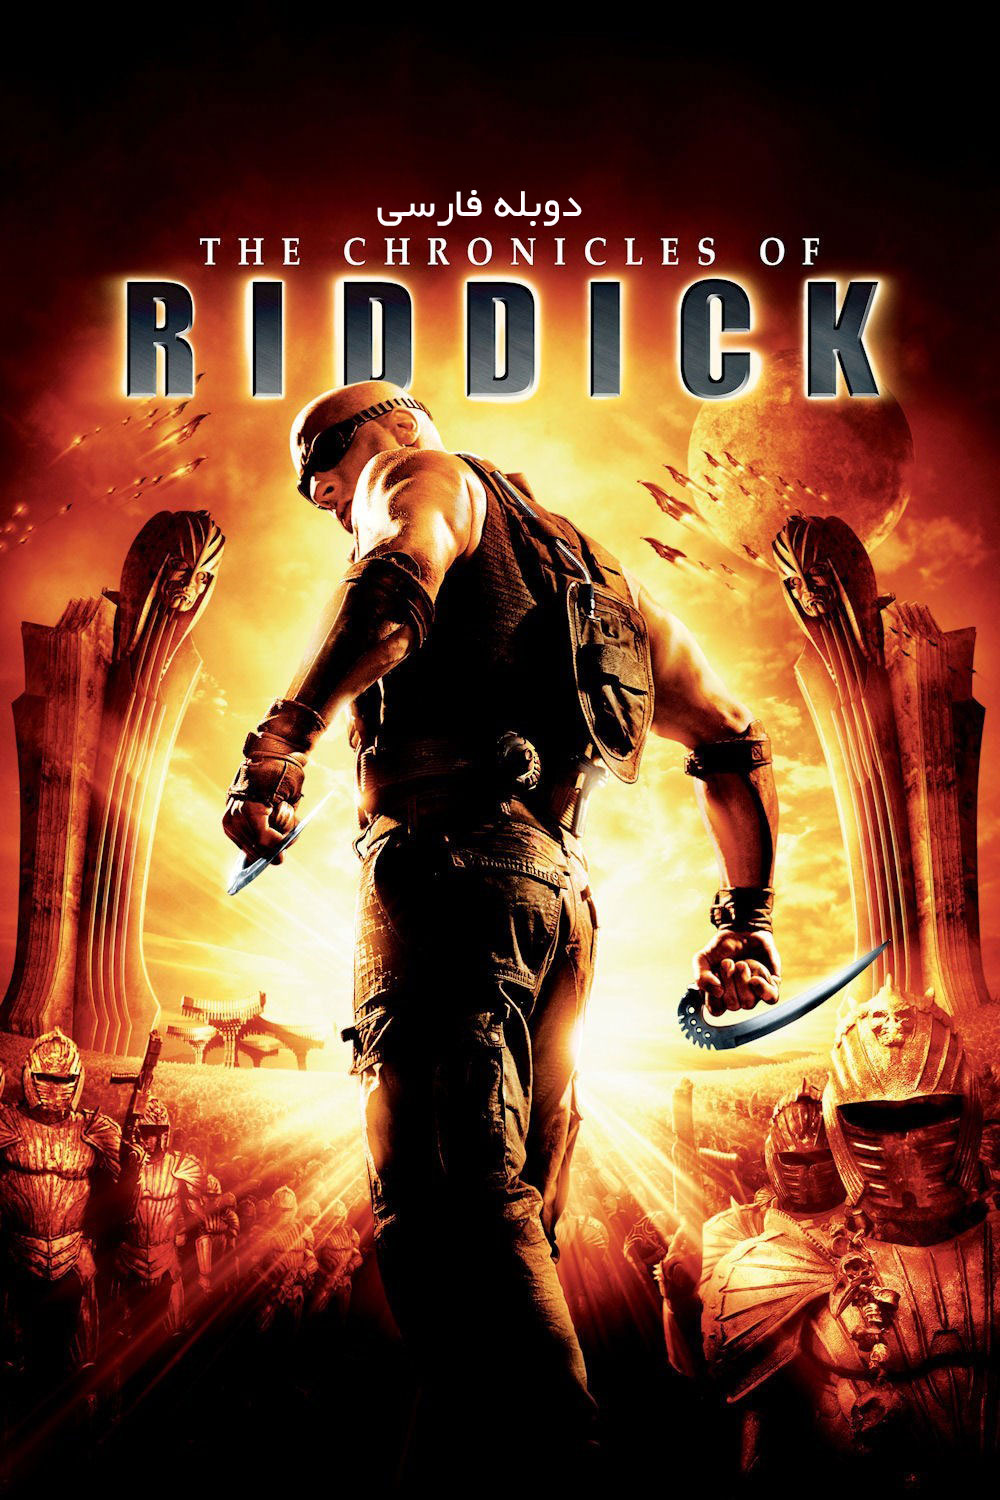 فیلم سرنوشت ریدیک The Chronicles of Riddick دوبله فارسی با لینک مستقیم